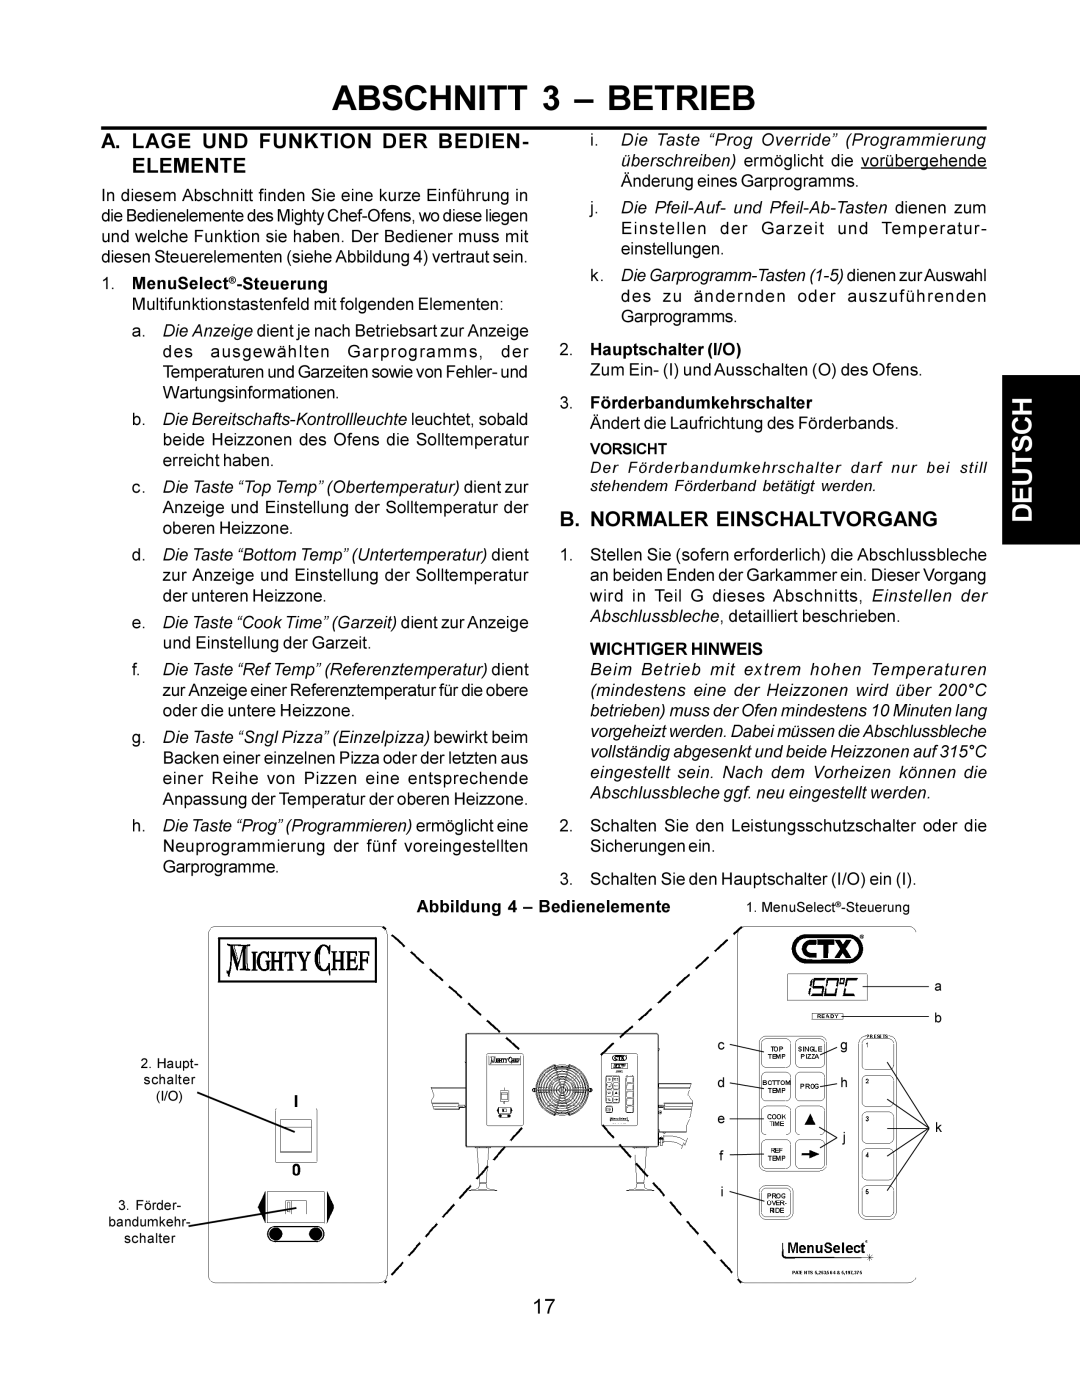 CTX TCO21140077, TCO21140063 manual Abschnitt 3 Betrieb, Lage UND Funktion DER BEDIEN- Elemente, Normaler Einschaltvorgang 